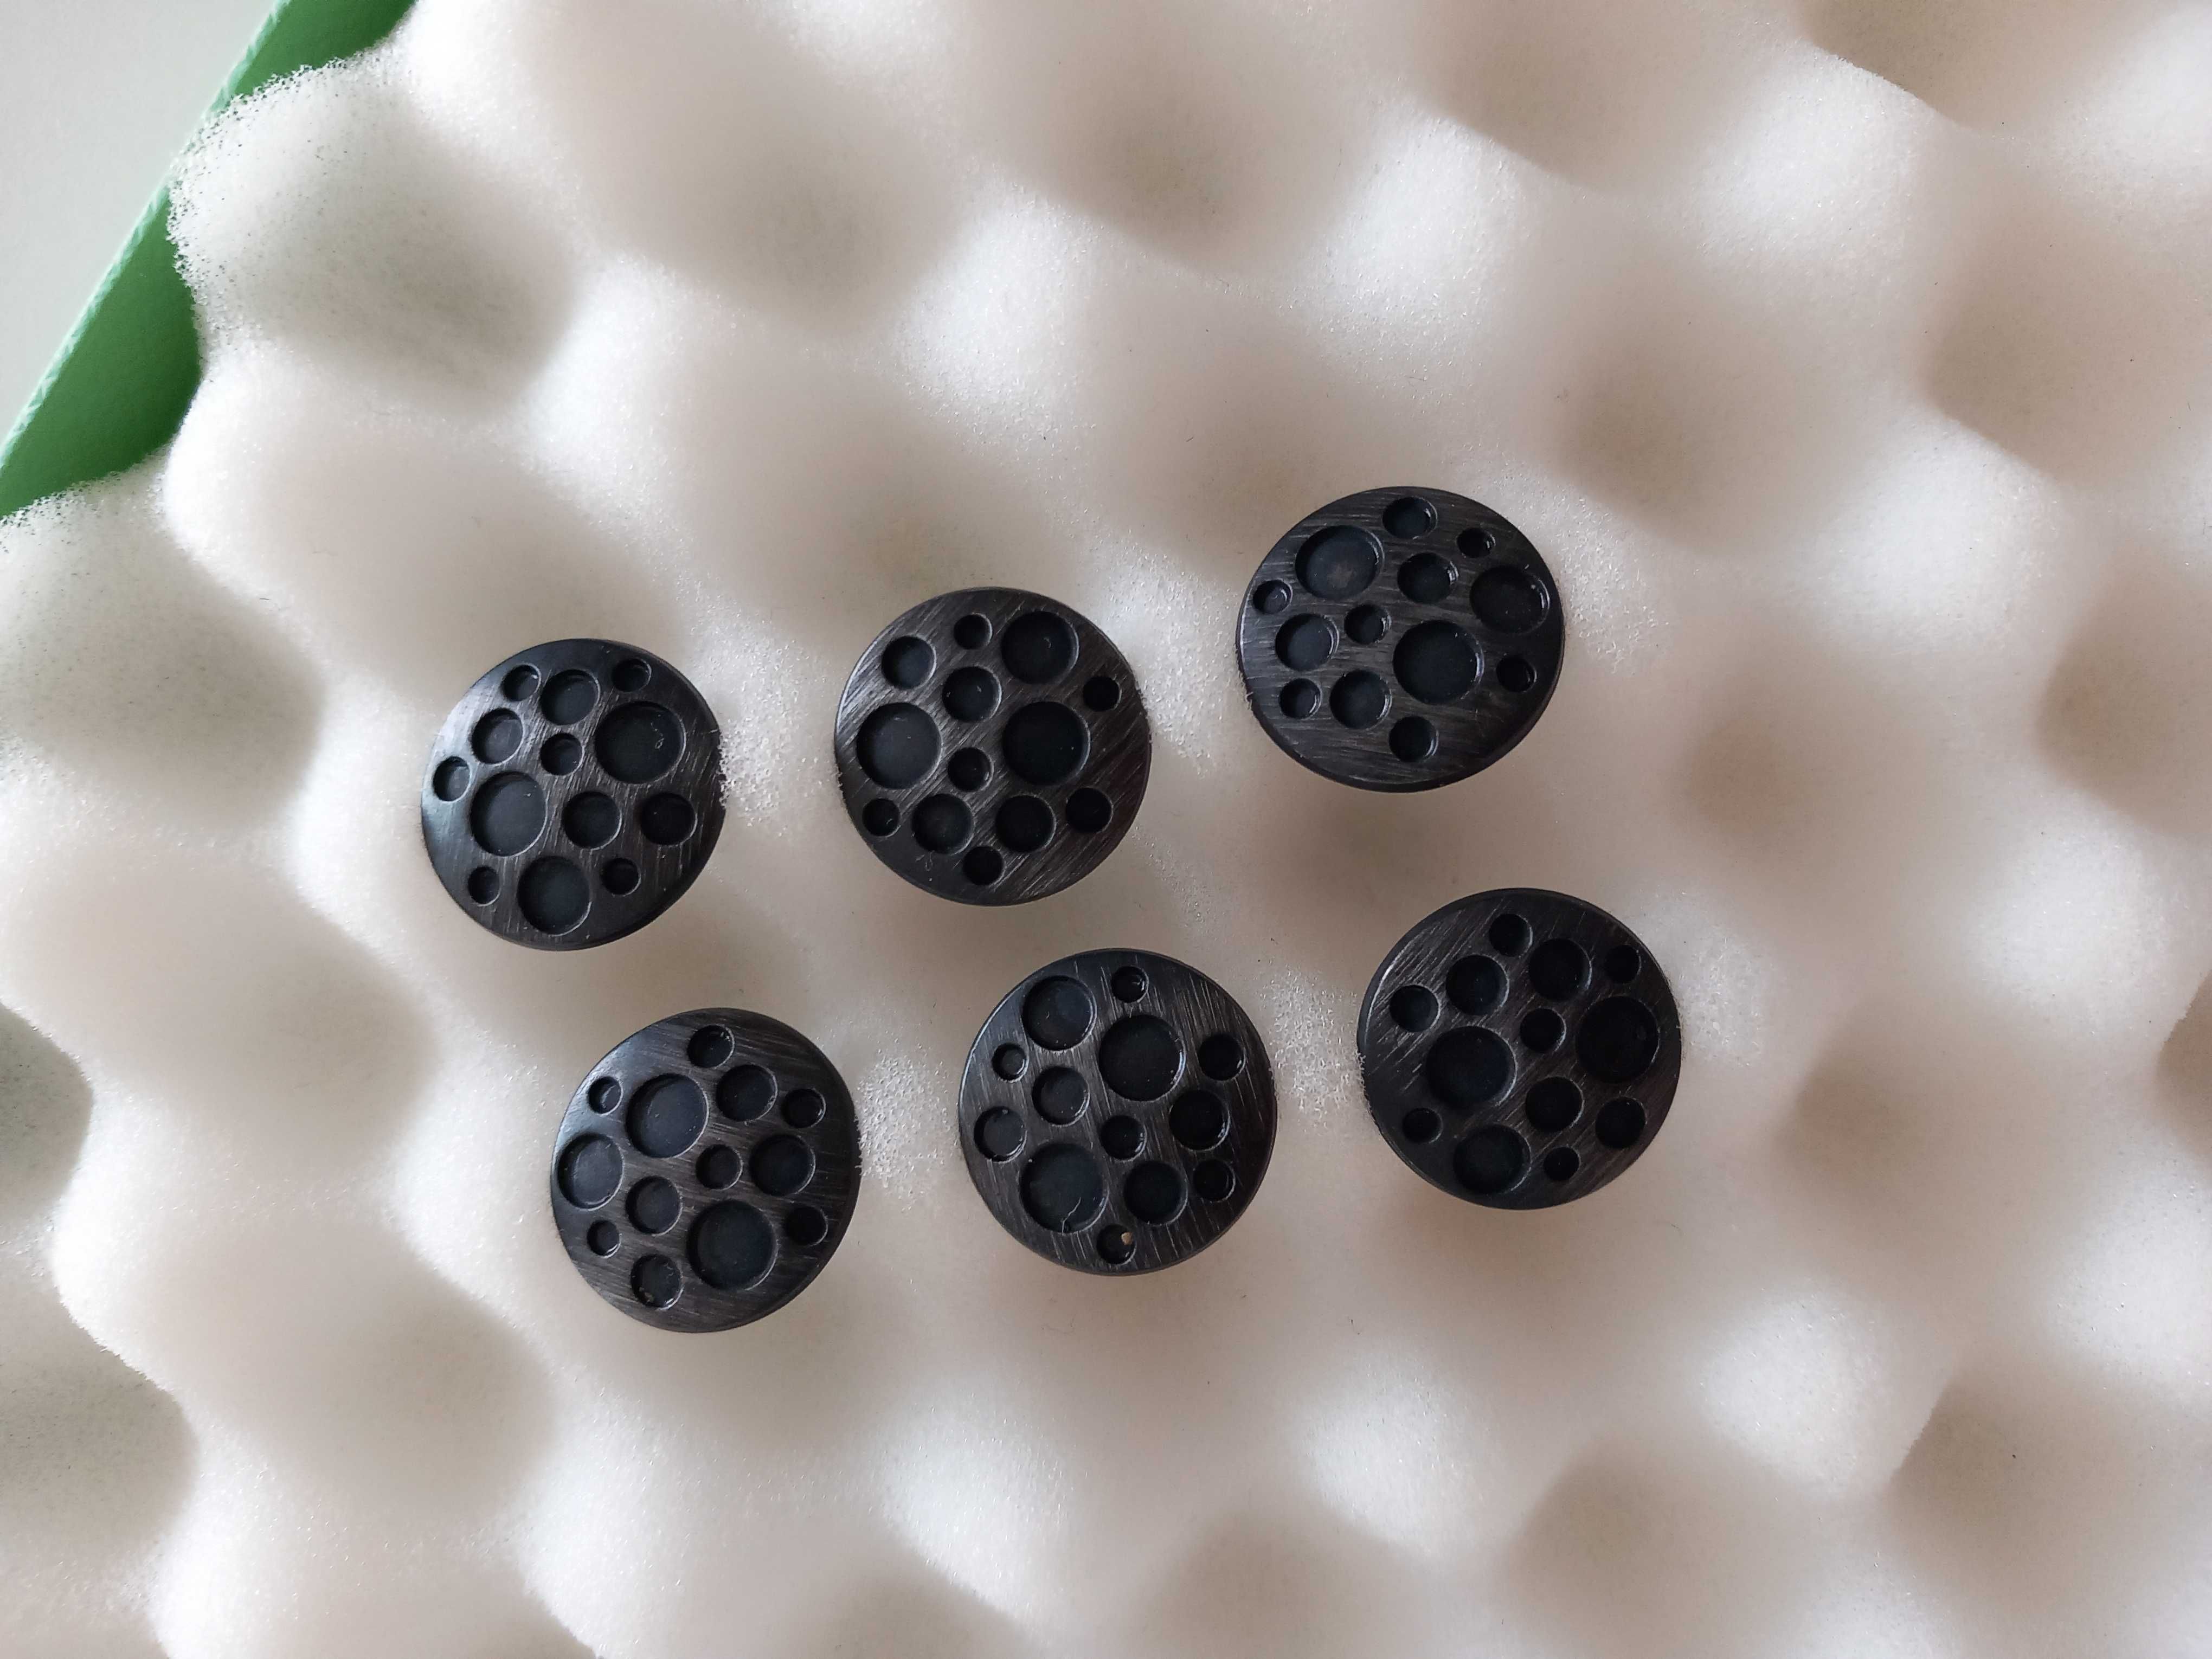 6 Botões em metal cor de chumbo com círculos. 1,8 cm diâmetro. Novos.